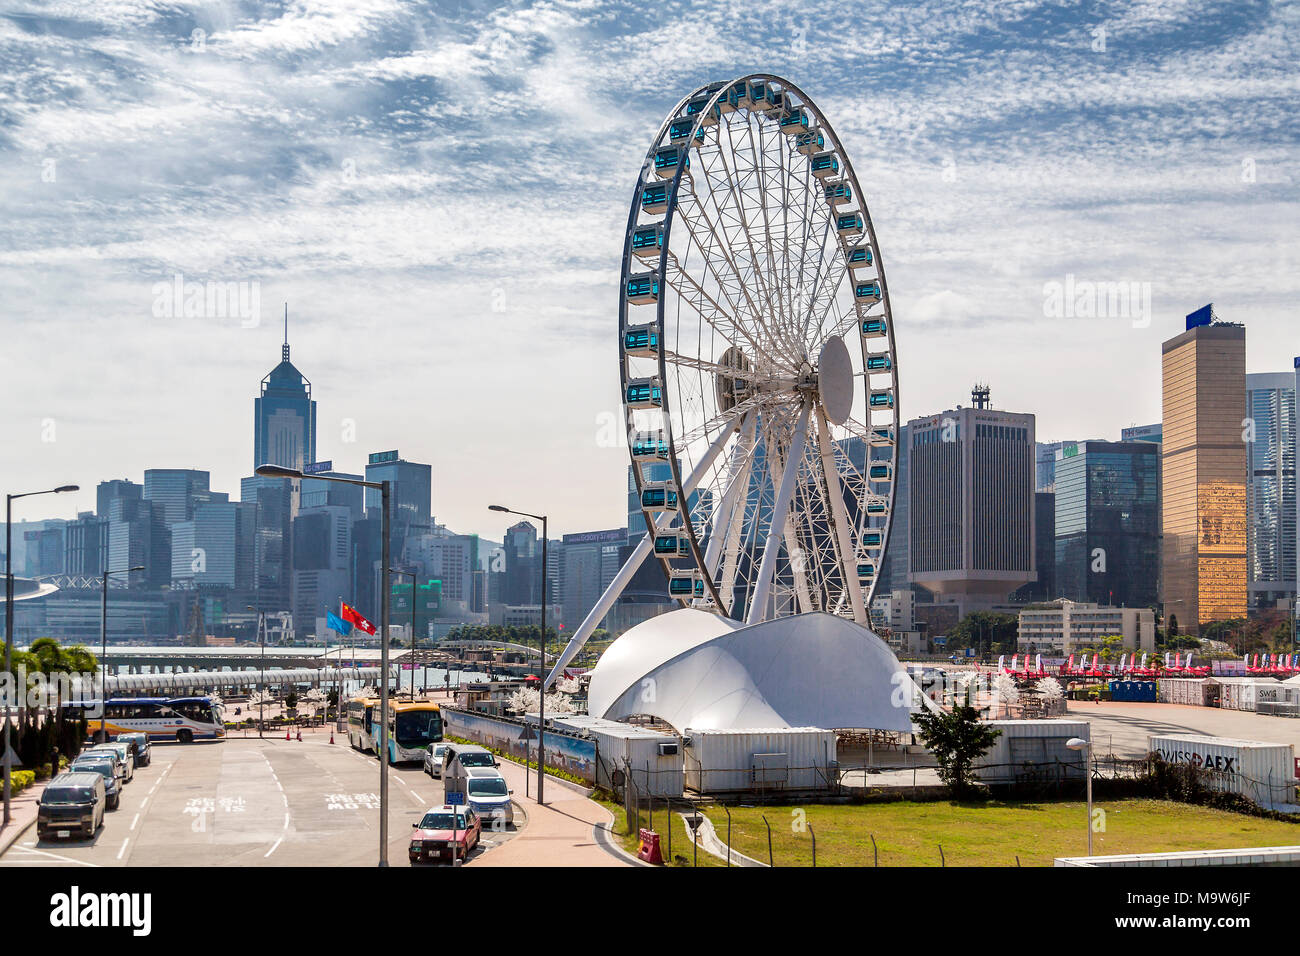 La roue d'observation de Hong Kong, le port de Victoria, l'île de Hong Kong. Banque D'Images